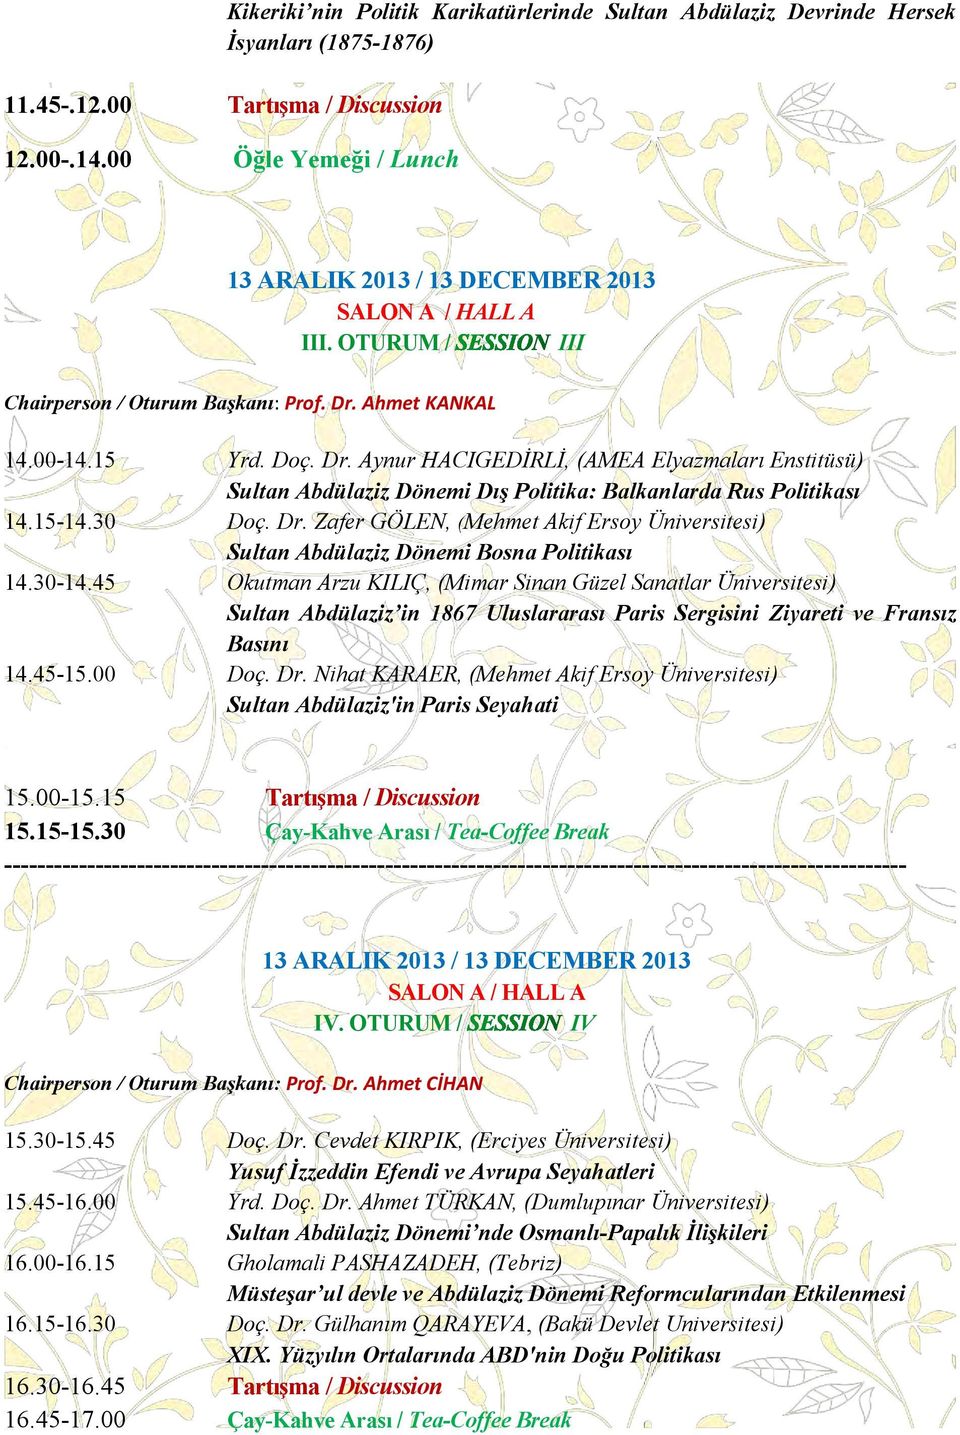 15-14.30 Doç. Dr. Zafer GÖLEN, (Mehmet Akif Ersoy Üniversitesi) Sultan Abdülaziz Dönemi Bosna Politikası 14.30-14.